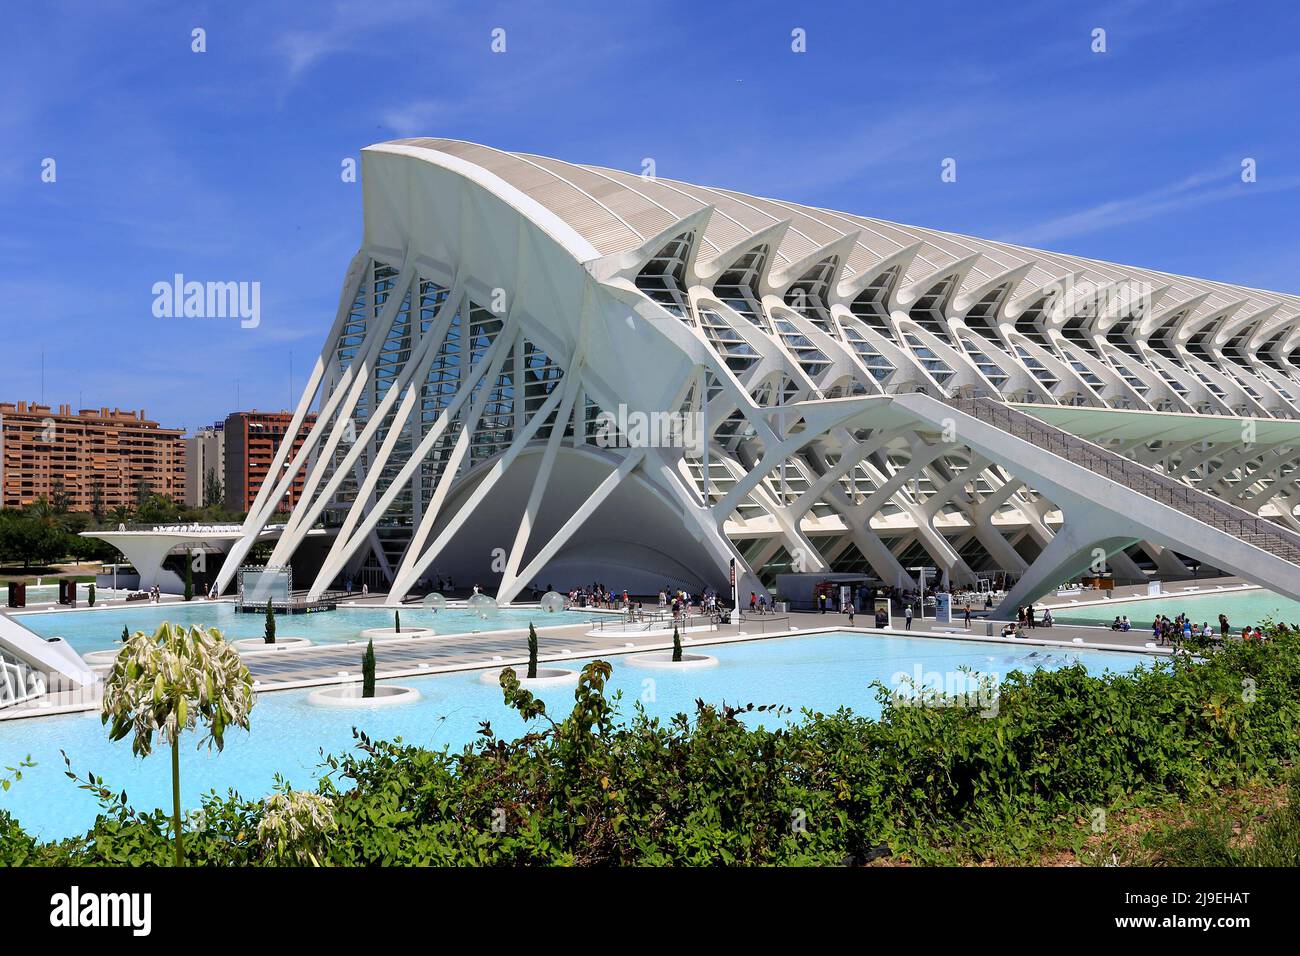 Grand architecture of Valencia Stock Photo